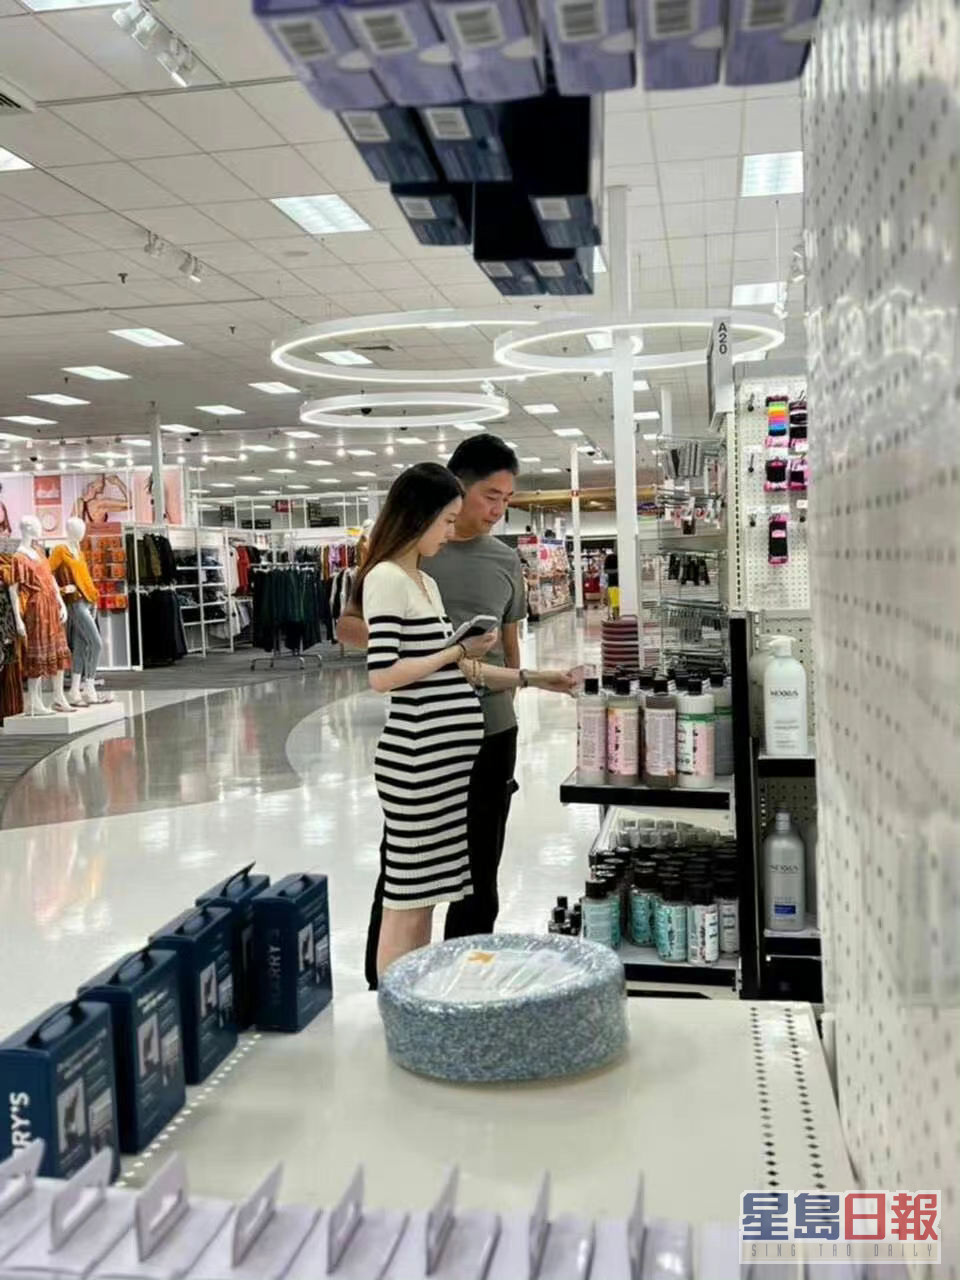 刘强东早前被影到与妻章泽天在美国逛超市。网图